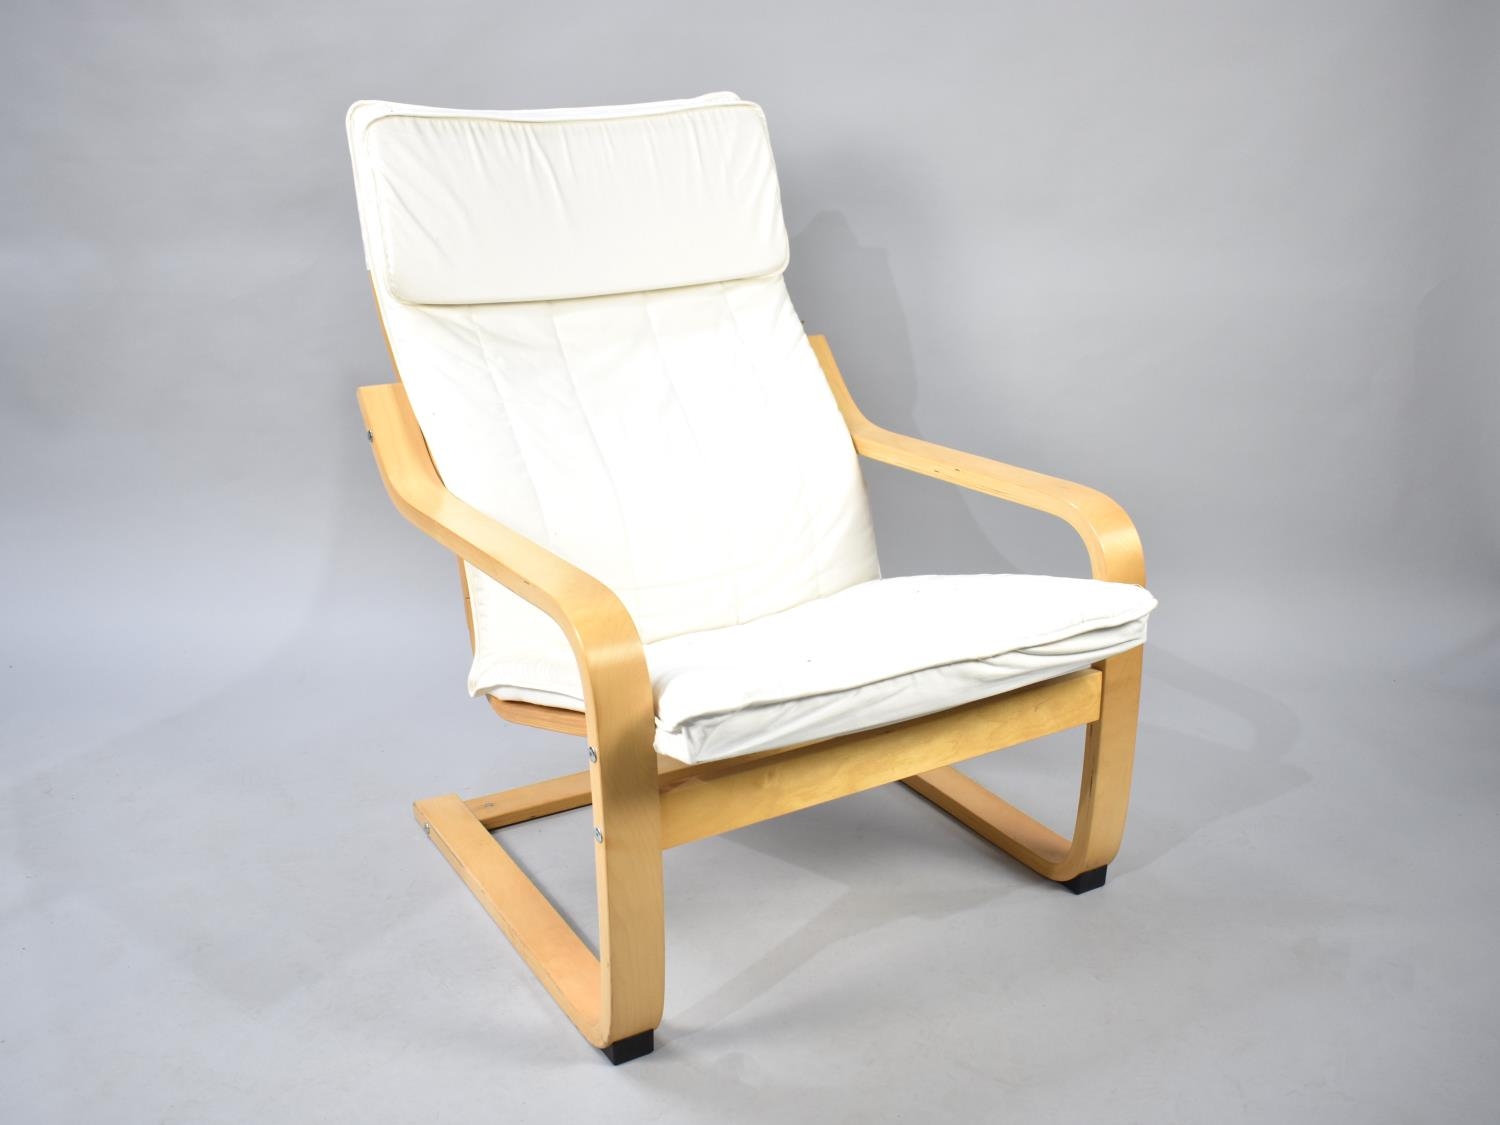 A Modern Open Armchair